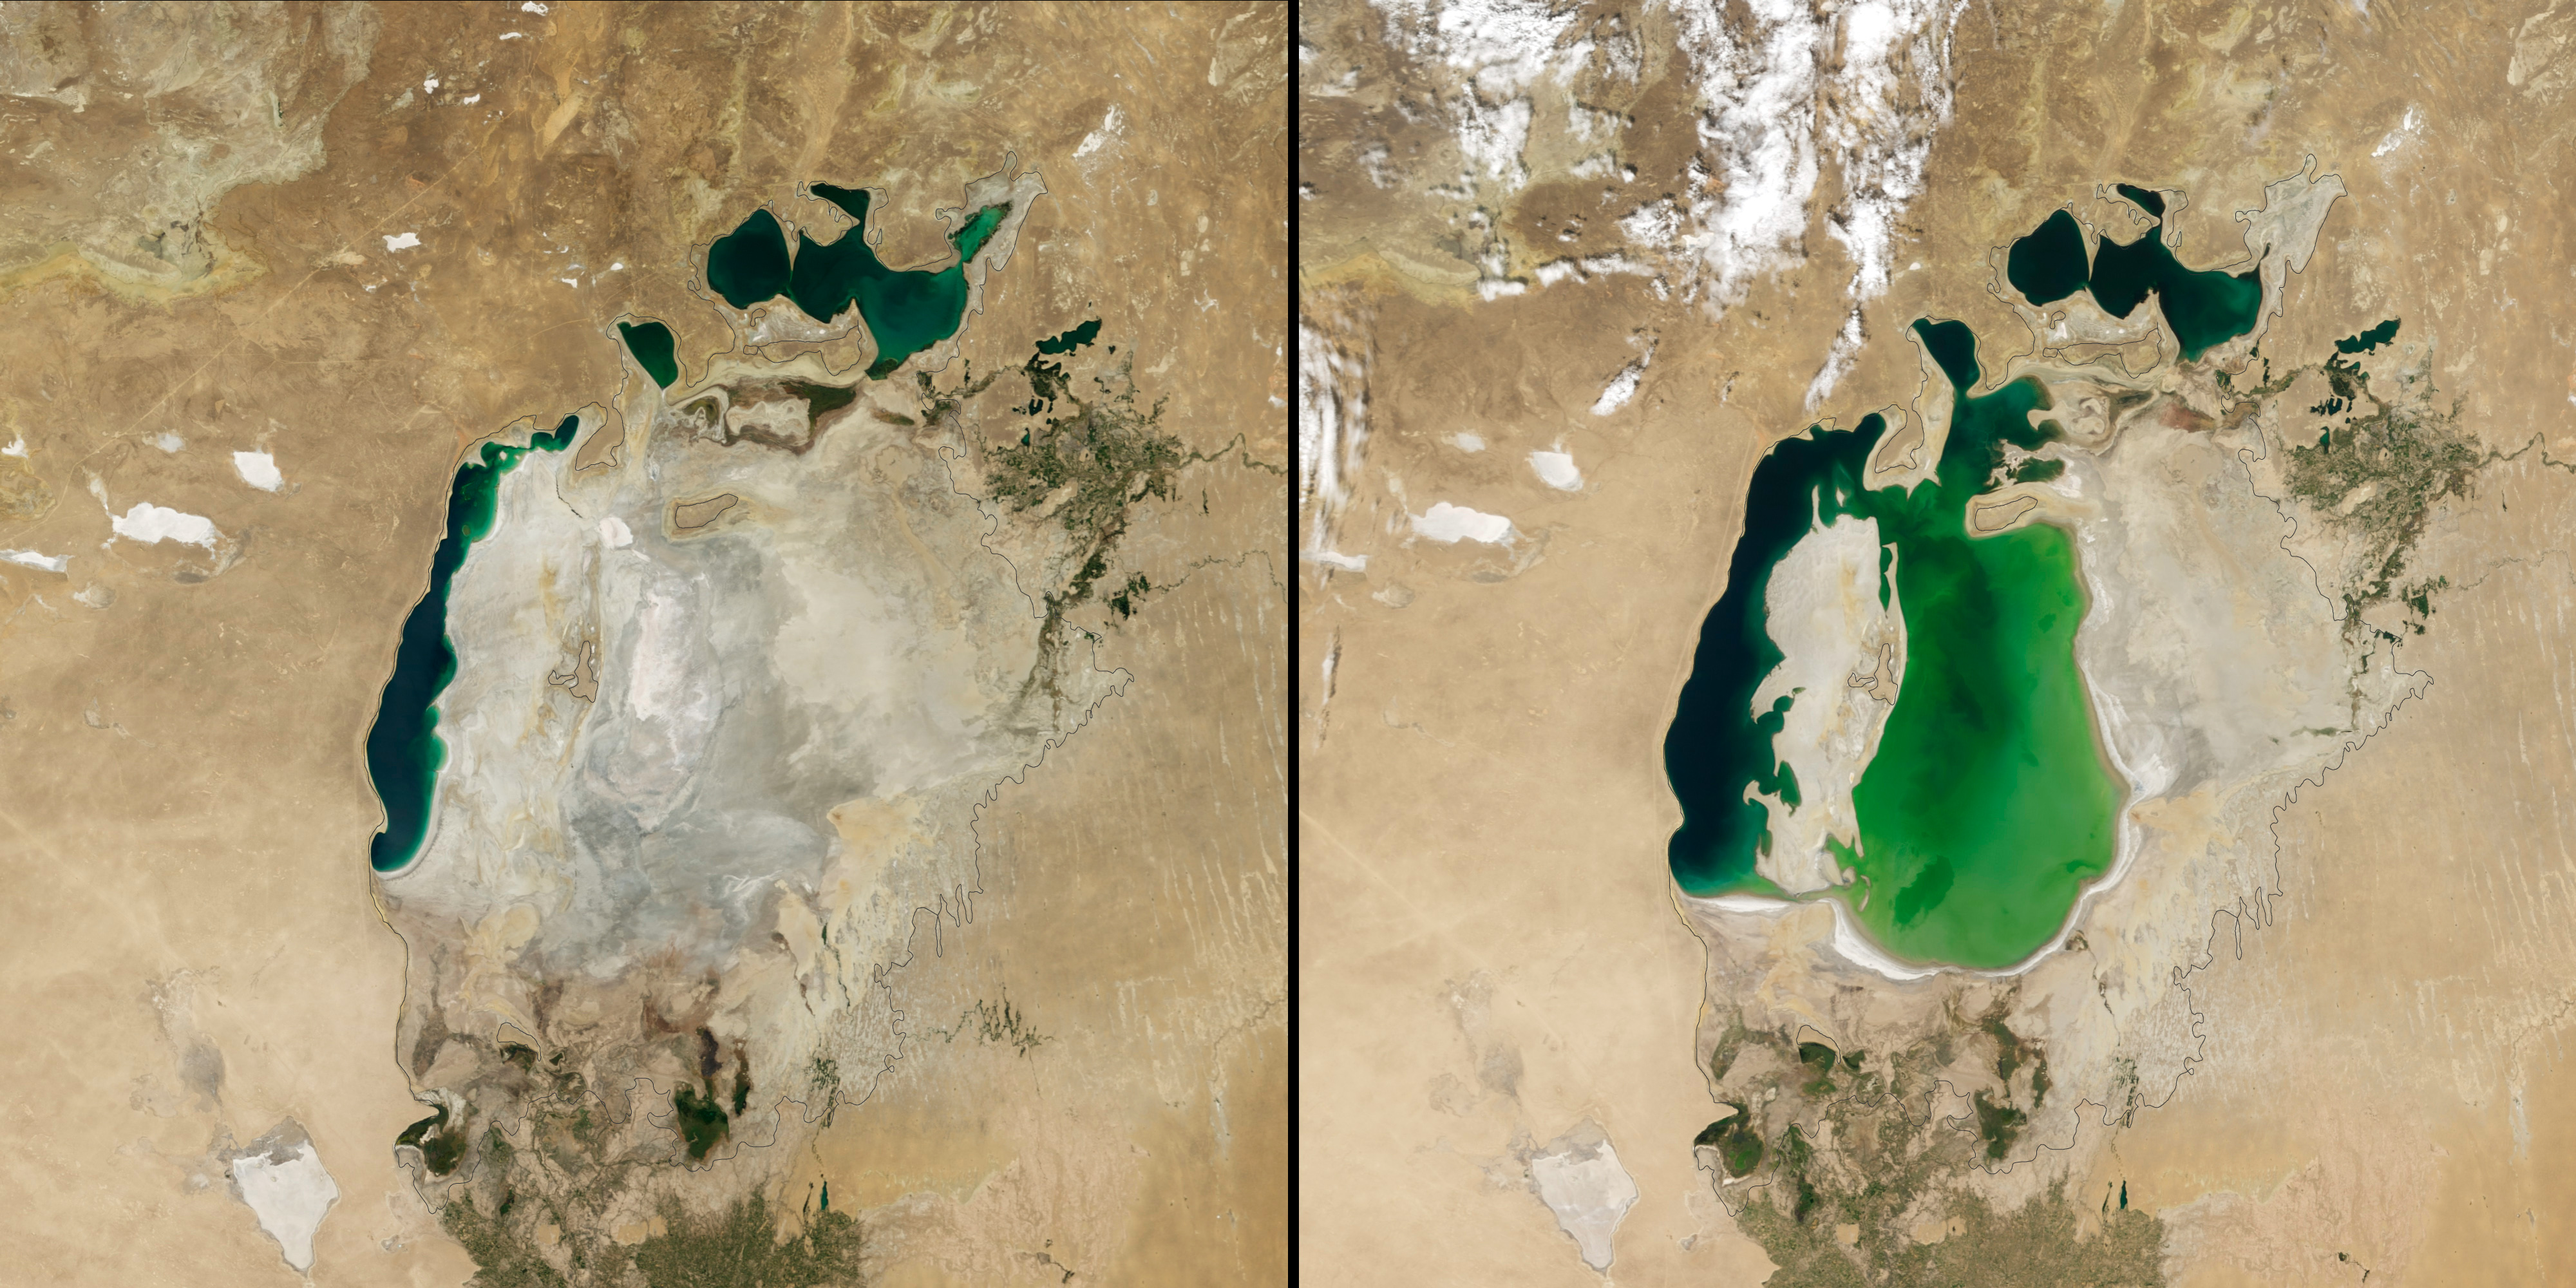 Aralsee: links im Jahr 2014, rechts im Jahr 2000, die schwarze Linie zeigt die Größe des Sees im Jahr 1960.